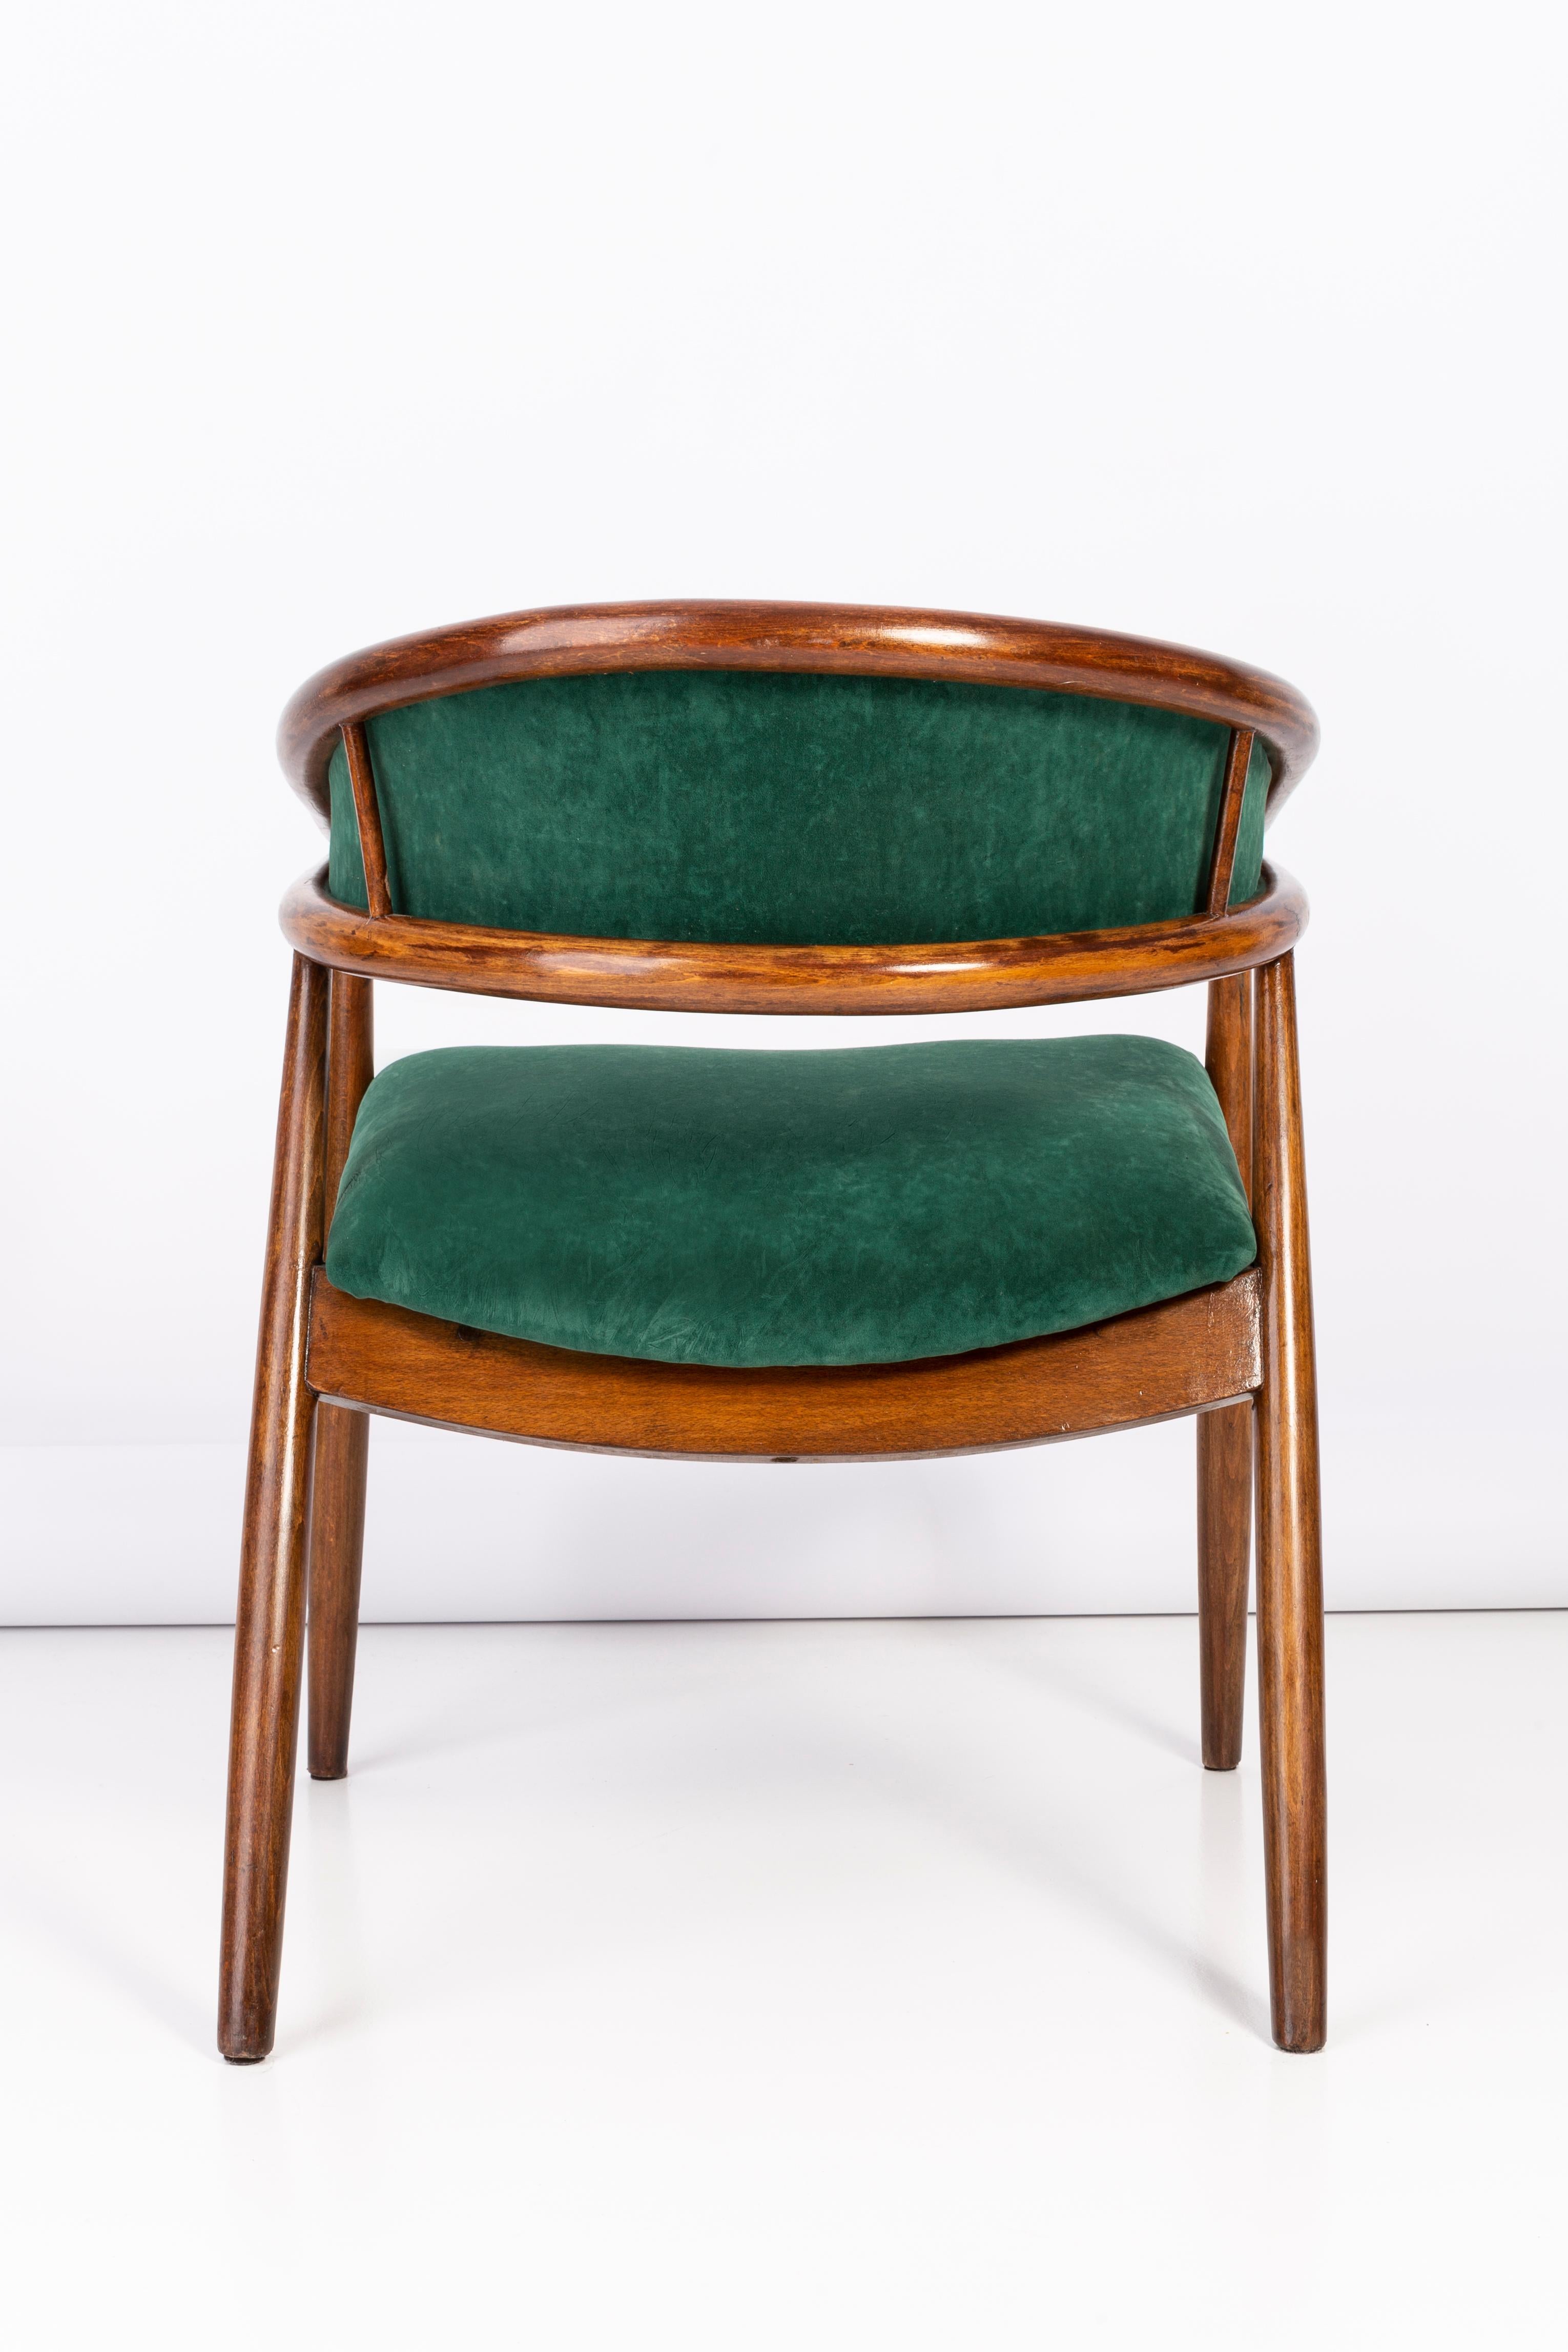 Vintage James Mont Bent Beech Armchair, Dark Green, 1960s For Sale 4